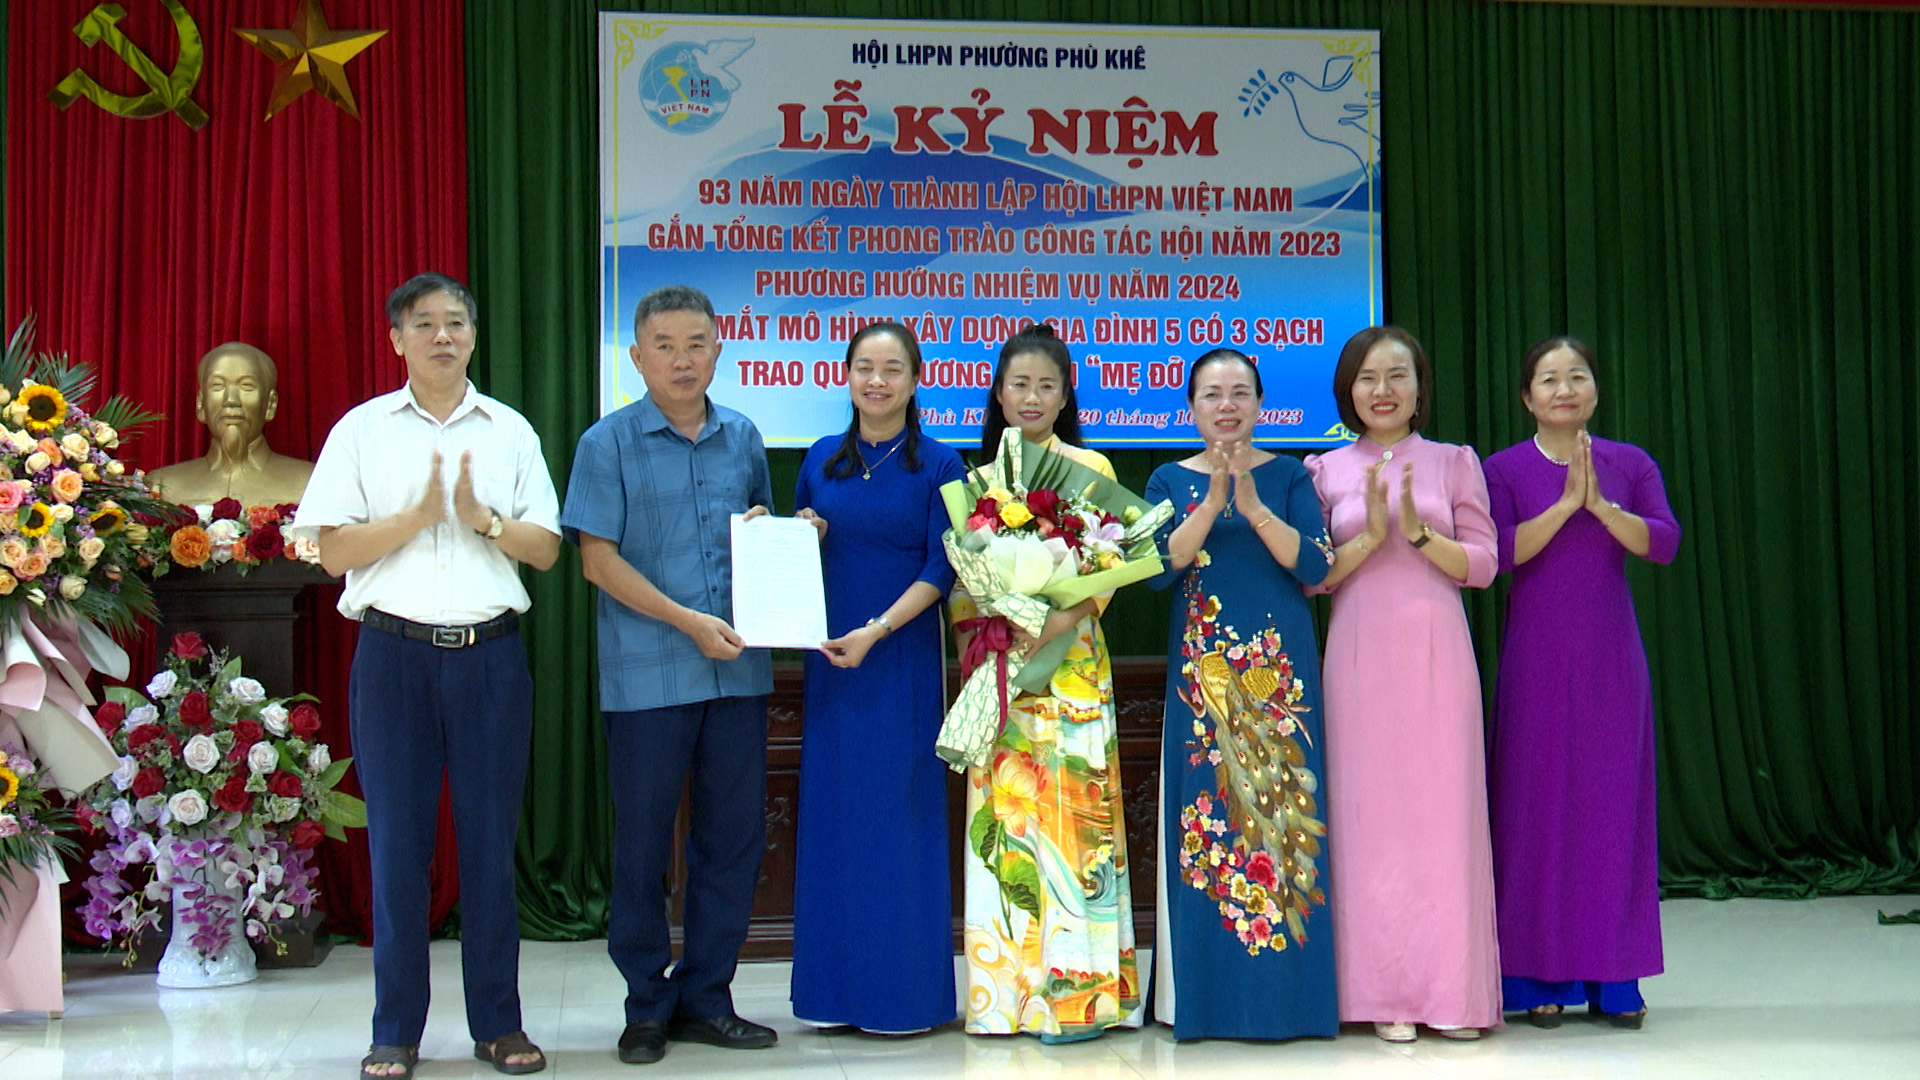 Phụ nữ Phù Khê kỷ niệm 93 năm thành lập Hội LHPN Việt Nam và tổng kết công tác hội năm 2023